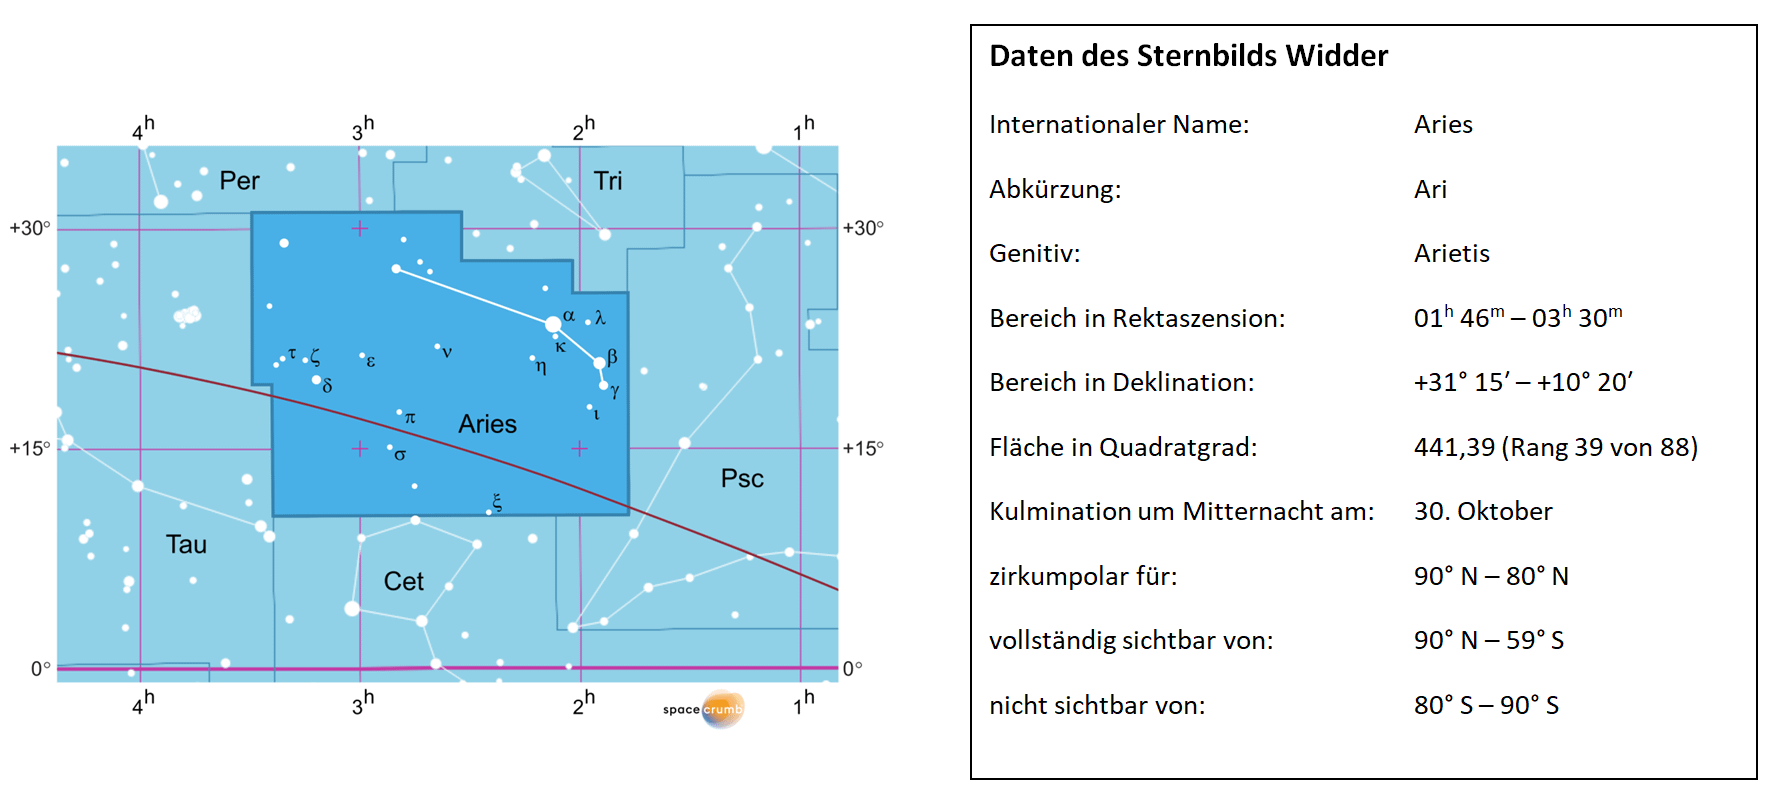 Links zeigt eine mit Koordinaten versehene Karte eines Himmelsausschnitts weiße Sterne auf hellblauem Hintergrund. Die Fläche, die das Sternbild Widder einnimmt, ist dunkelblau hervorgehoben. Eine Tabelle rechts gibt wichtige Daten des Sternbilds an.